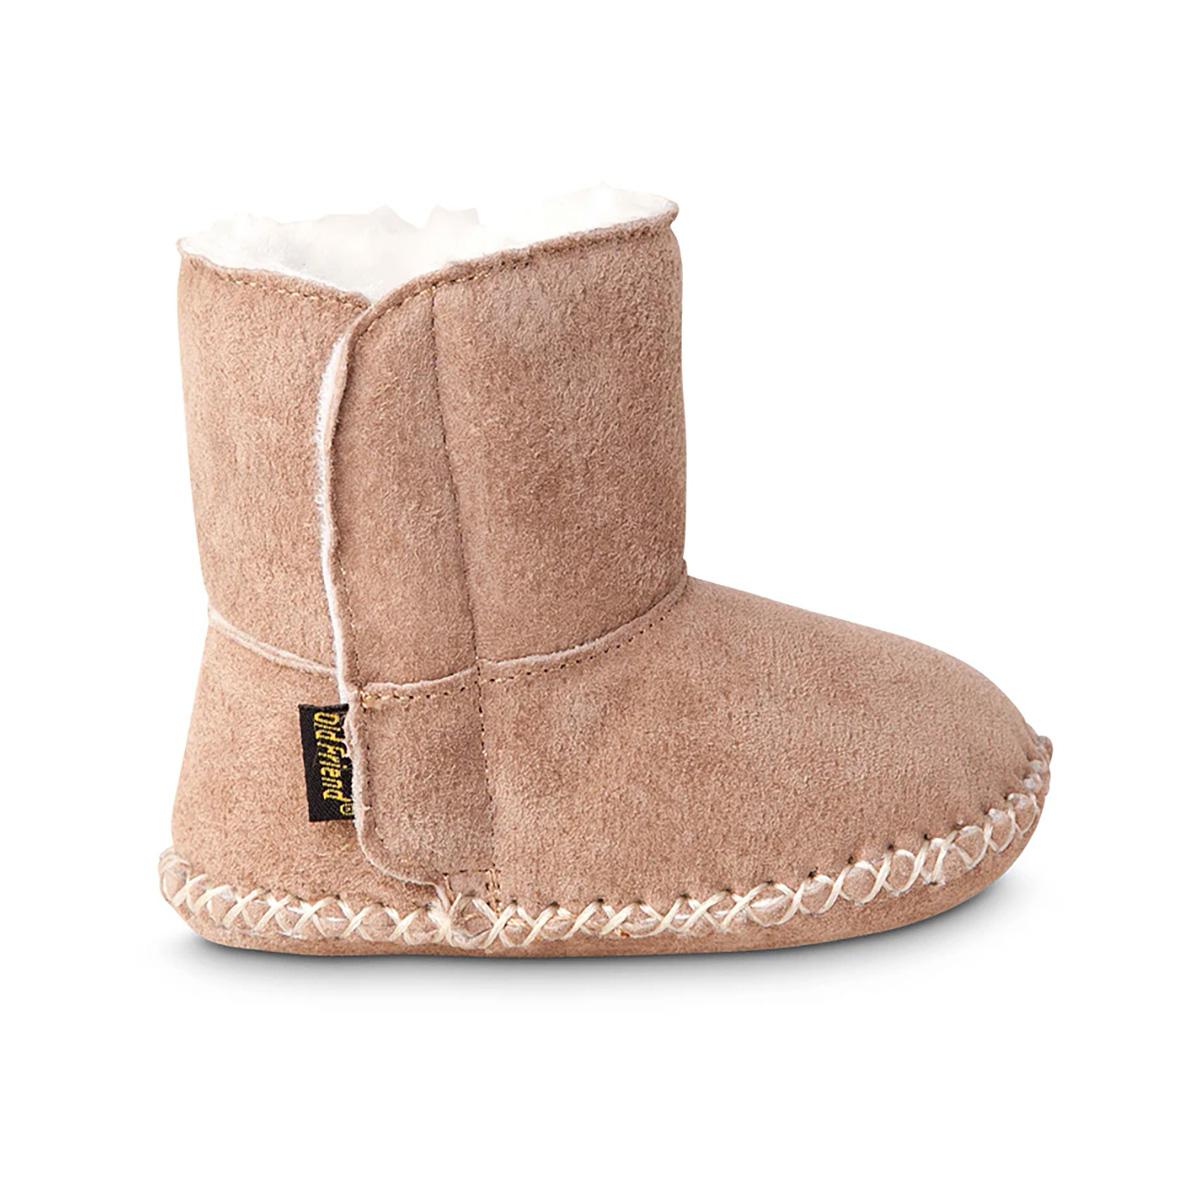 velcro boot slippers